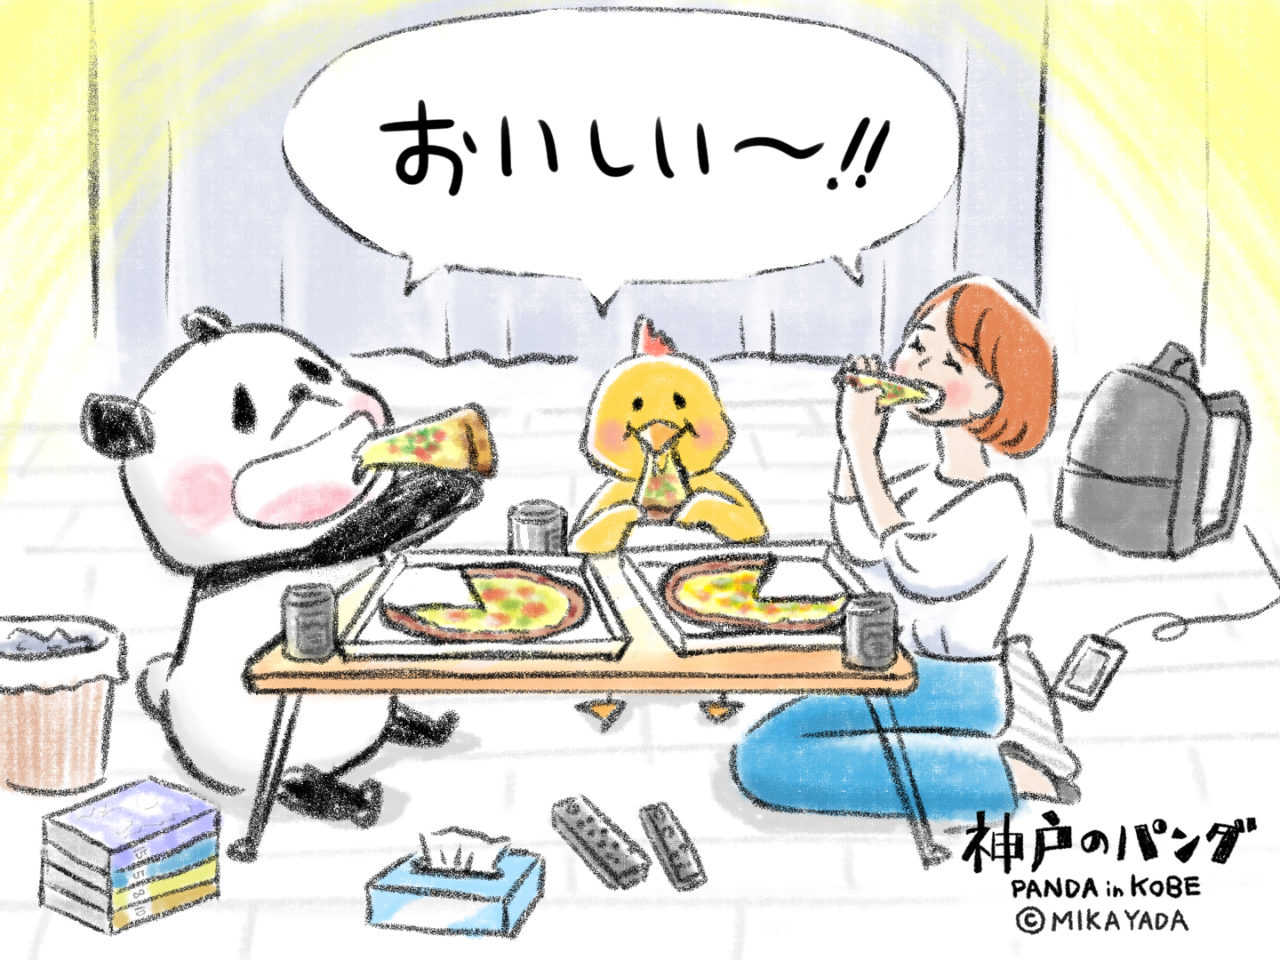 神戸のパンダ、みんなでピザを食べる